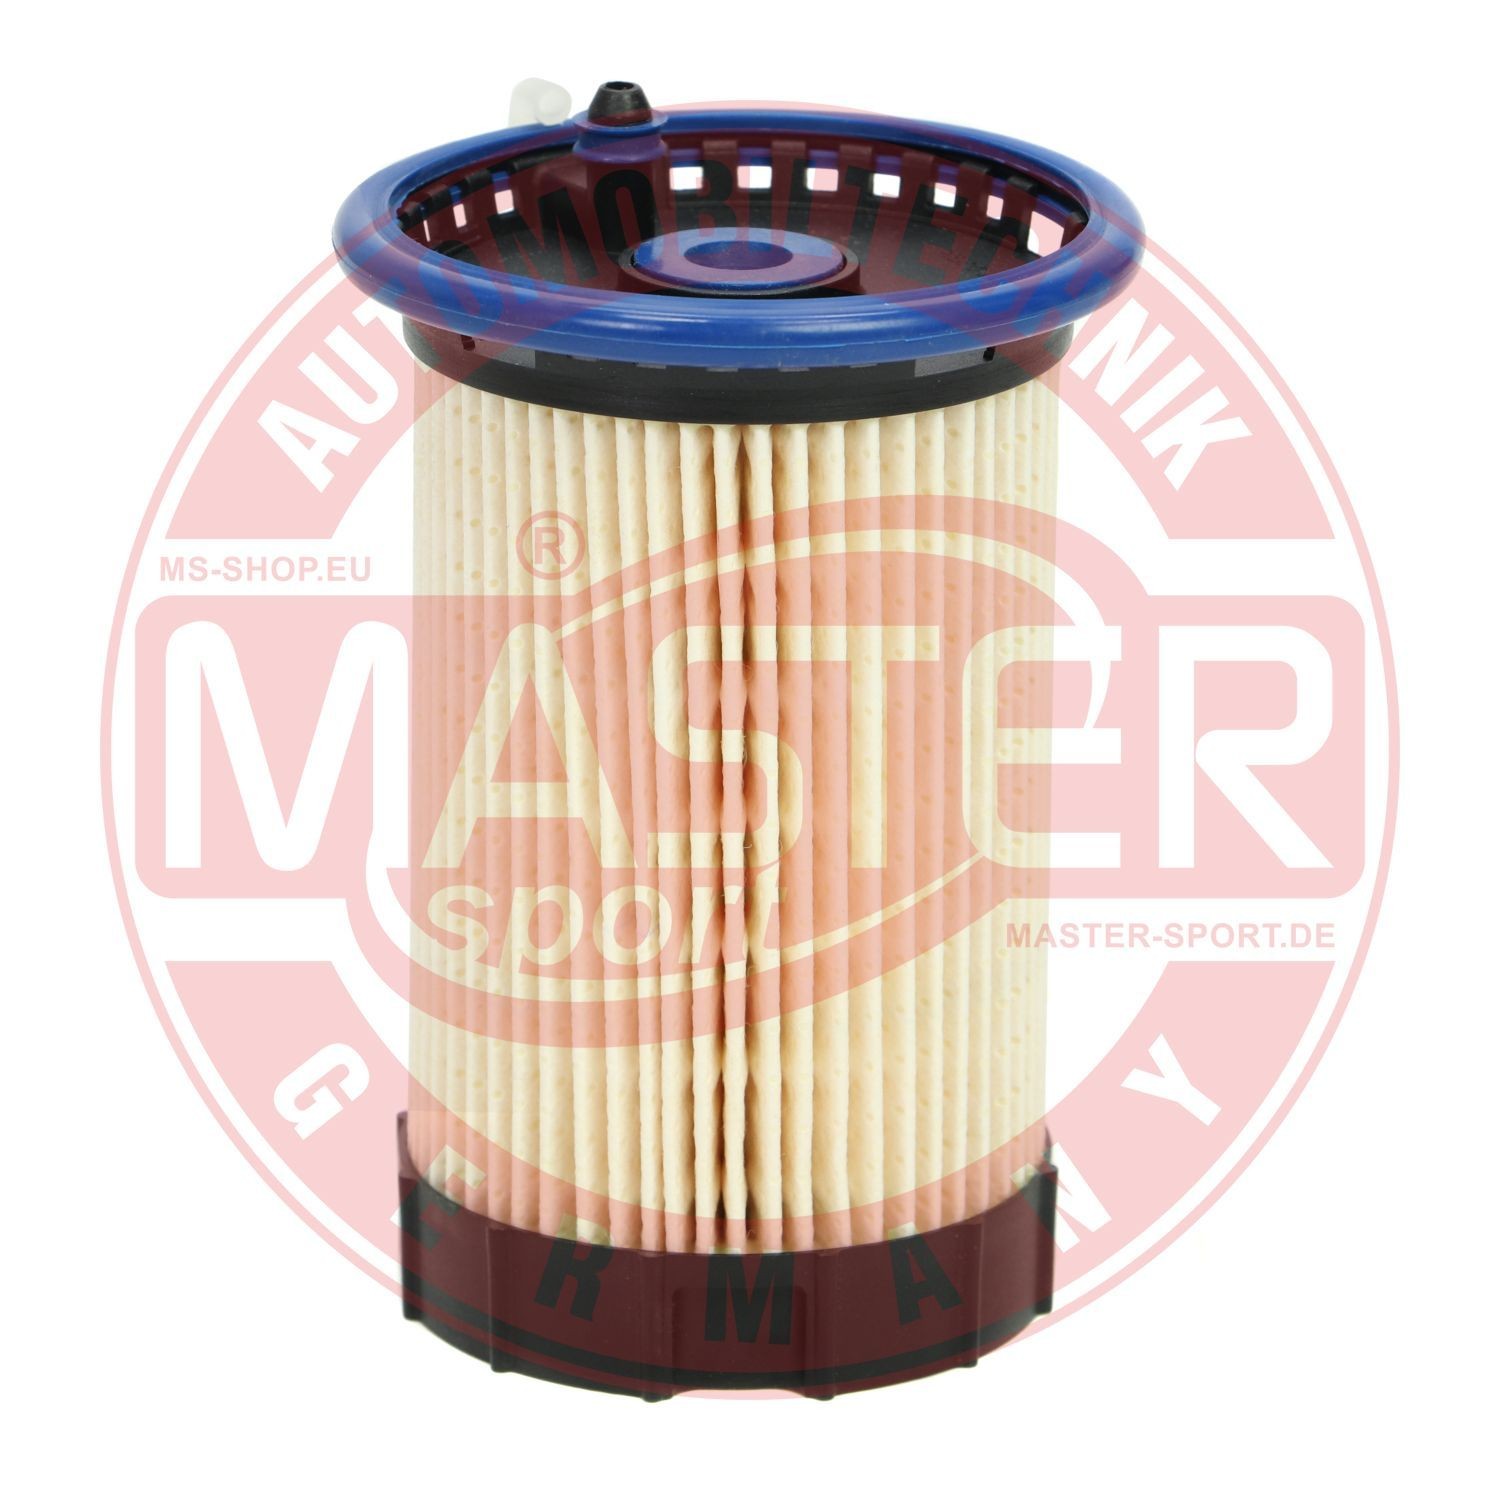 Fuel filter MASTER-SPORT Filter Insert - 8014-KF-PCS-MS